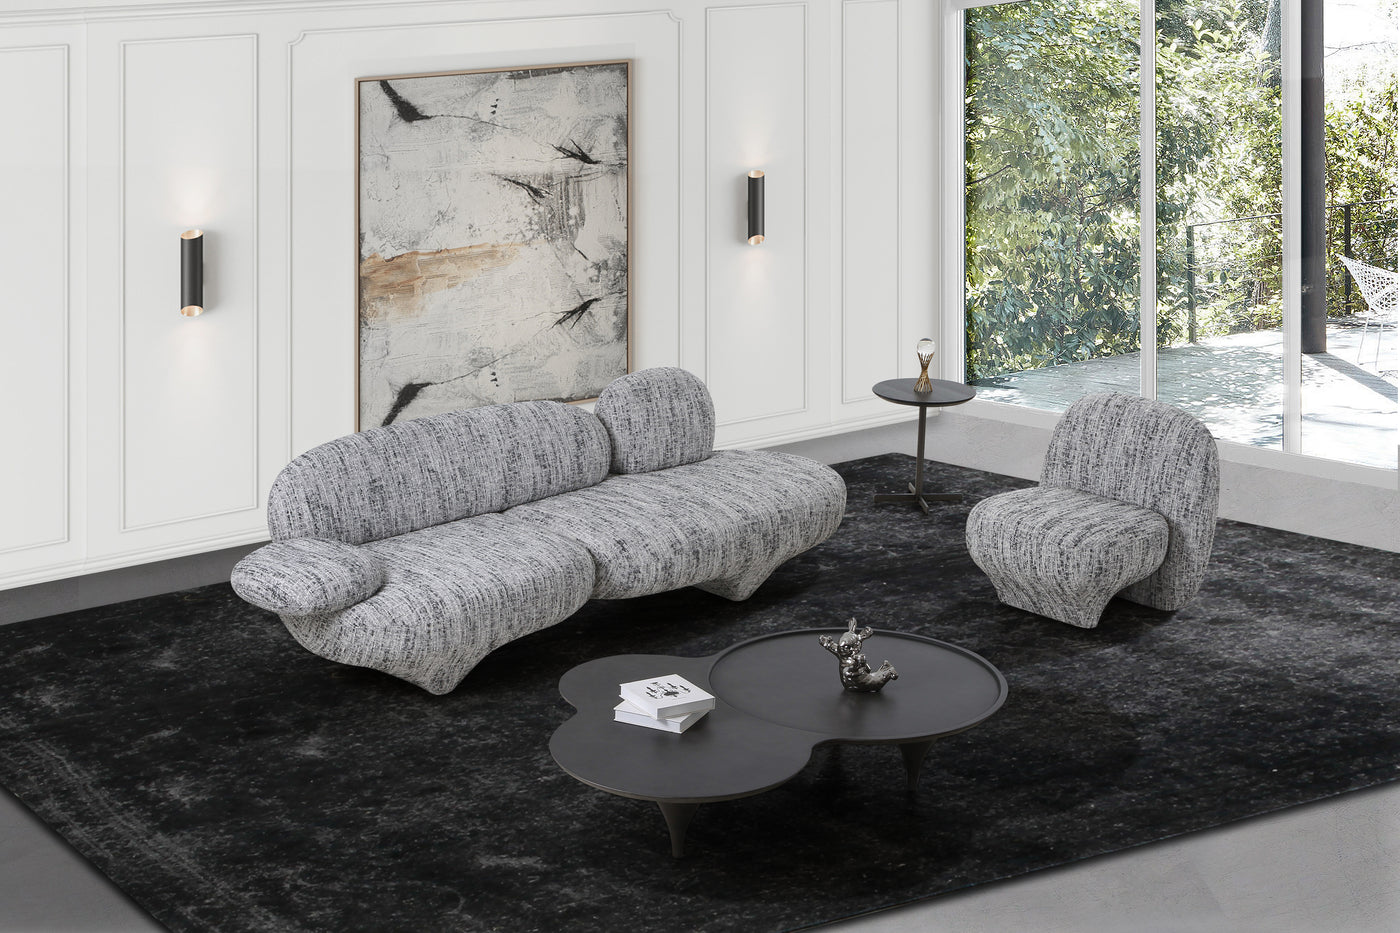 Europa Chair - Future Classics Furniture